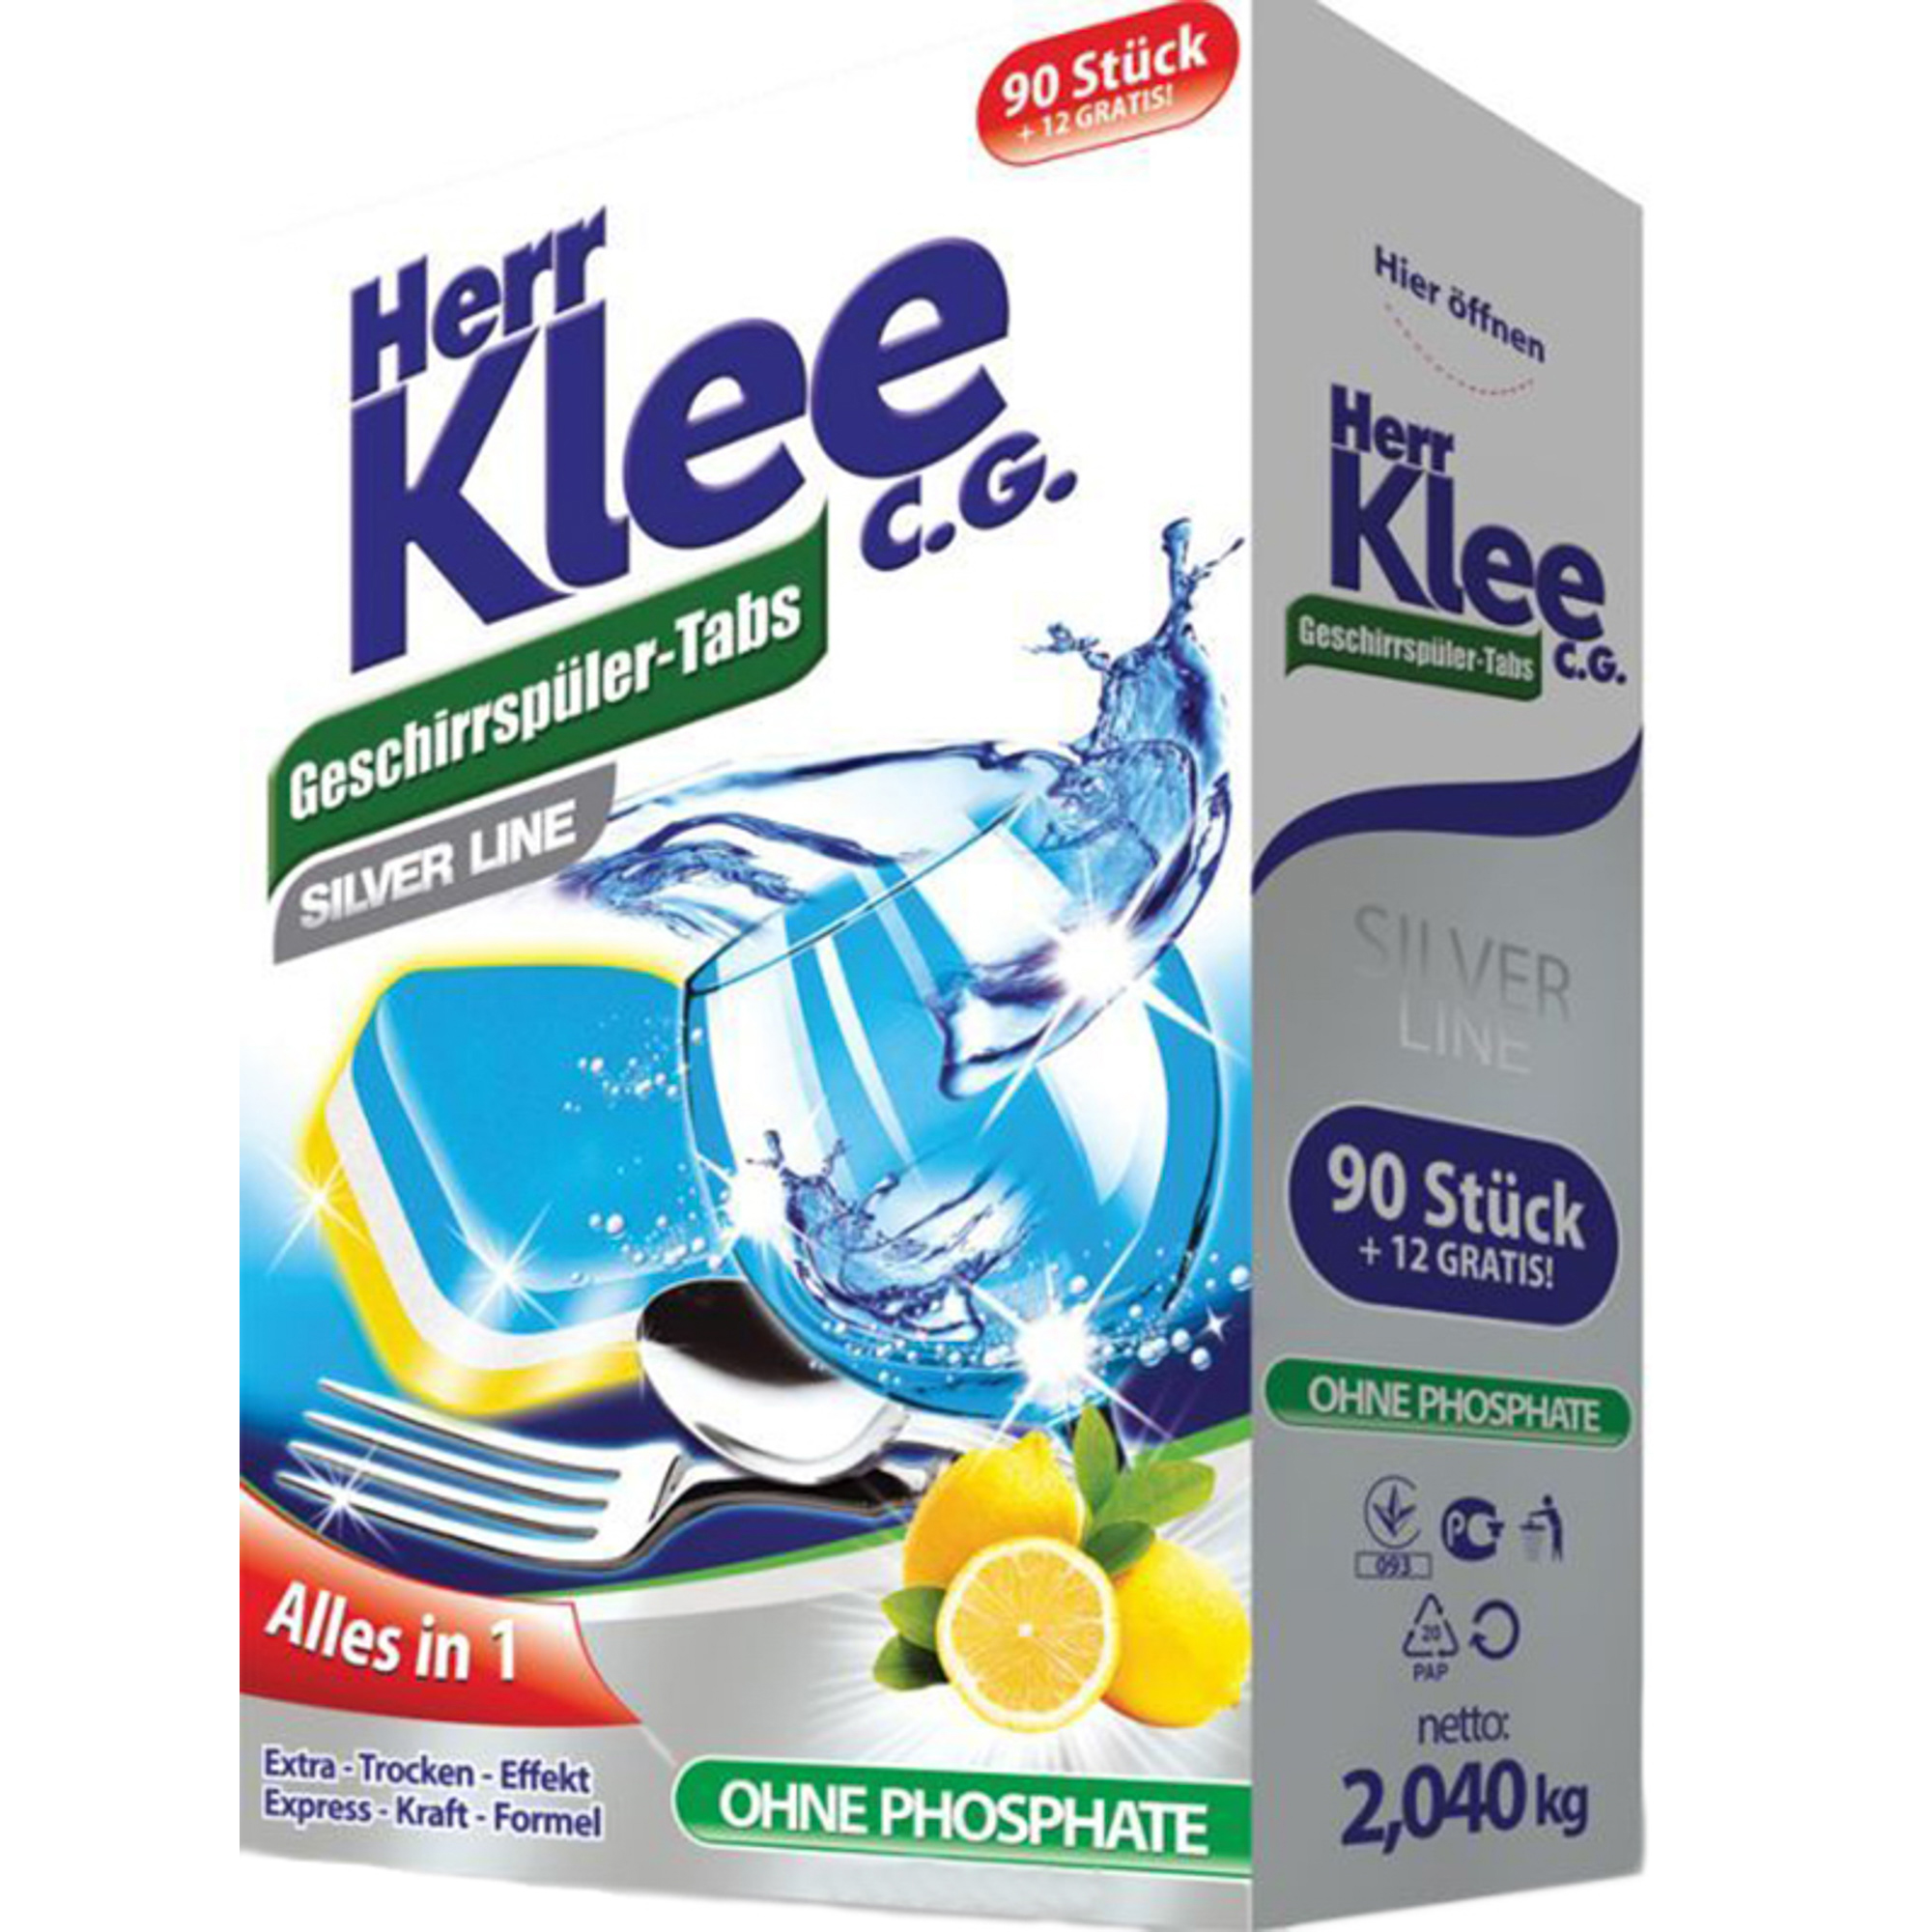 Таблетки для посудомоечной машины Herr Klee Silver Line 102 шт